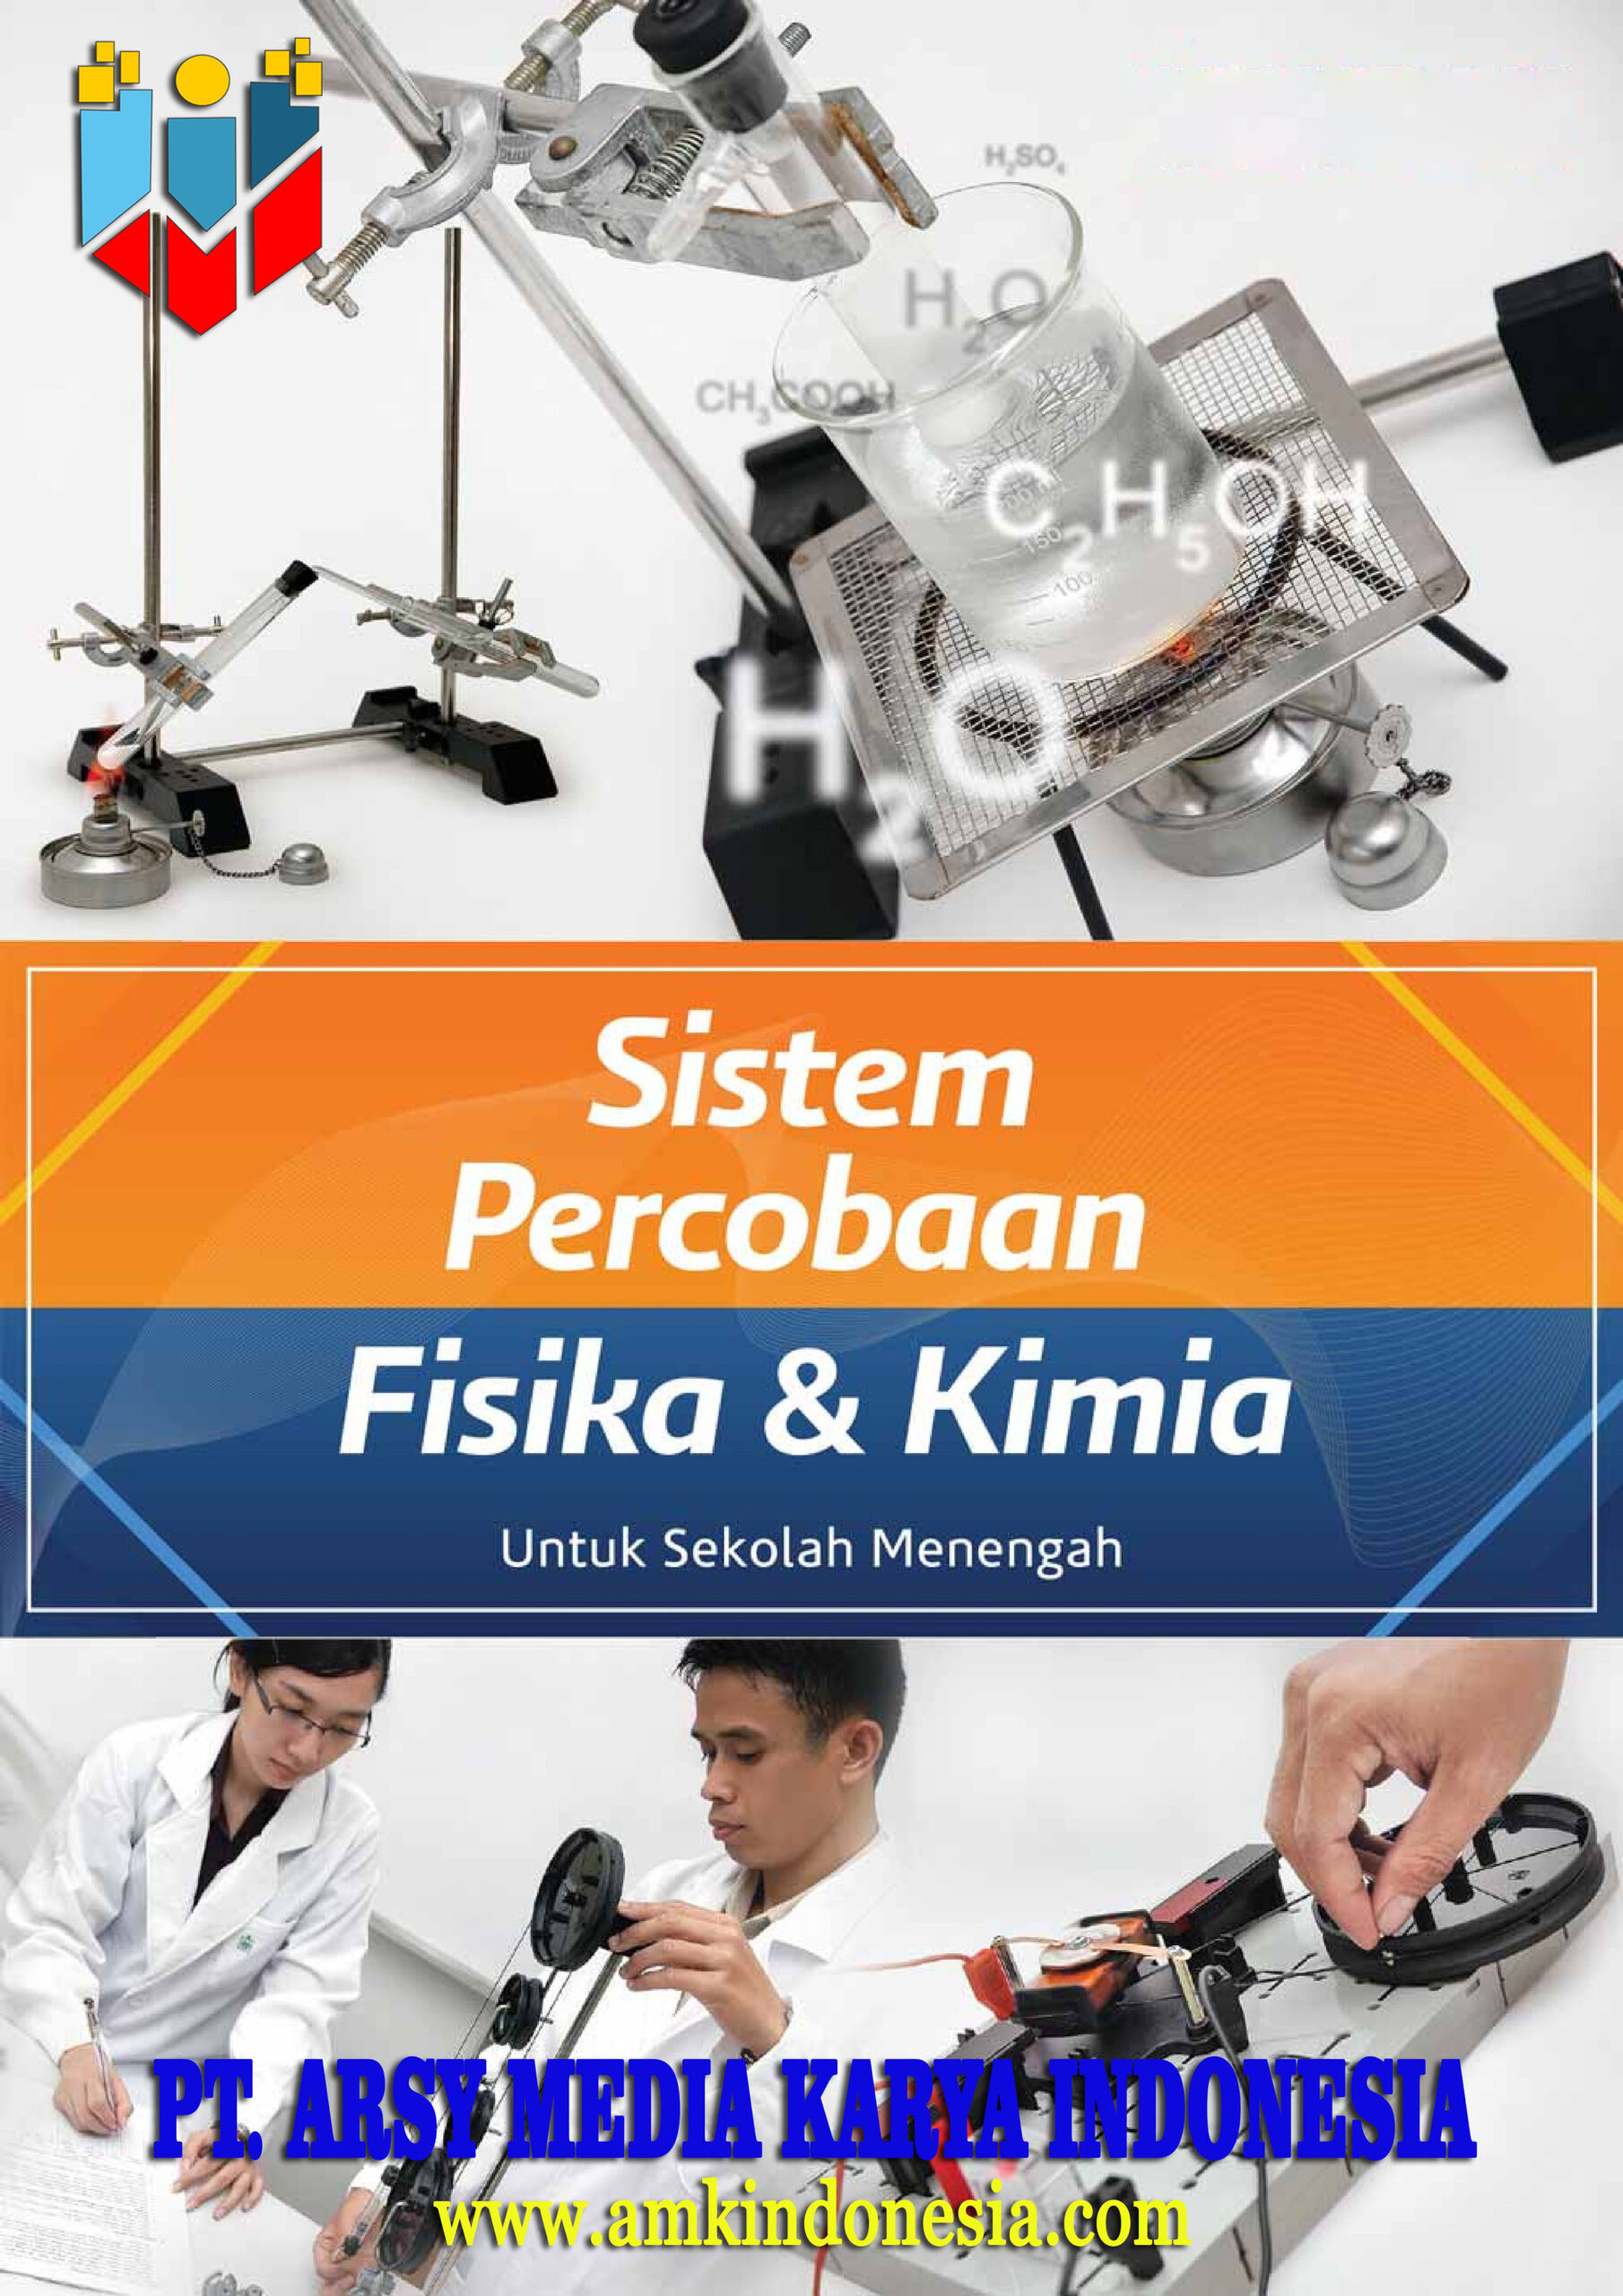 Katalog Sistem Percobaan Fisika & Kimia pt. arsy media karya indonesia amkindonesia.com